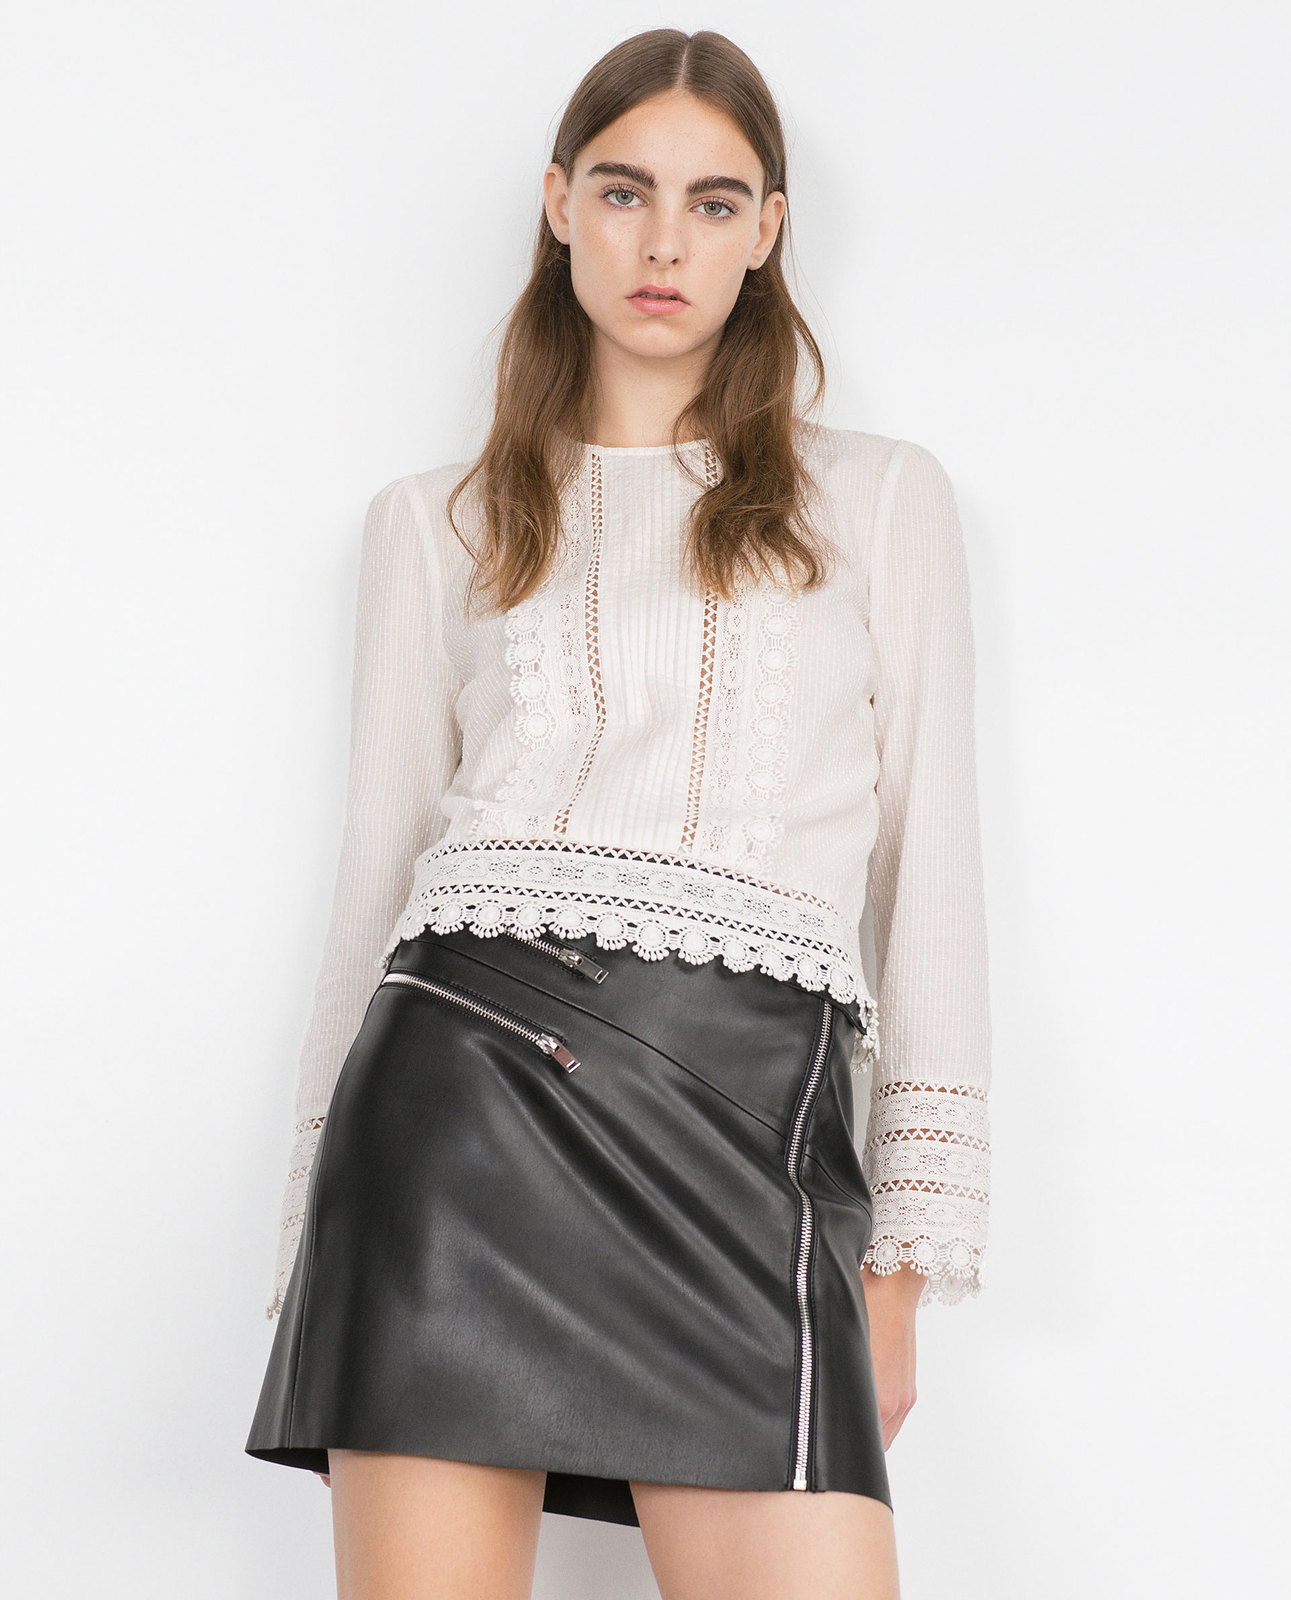 Zara csipke rátétes plumetis blúz 2015 fotója